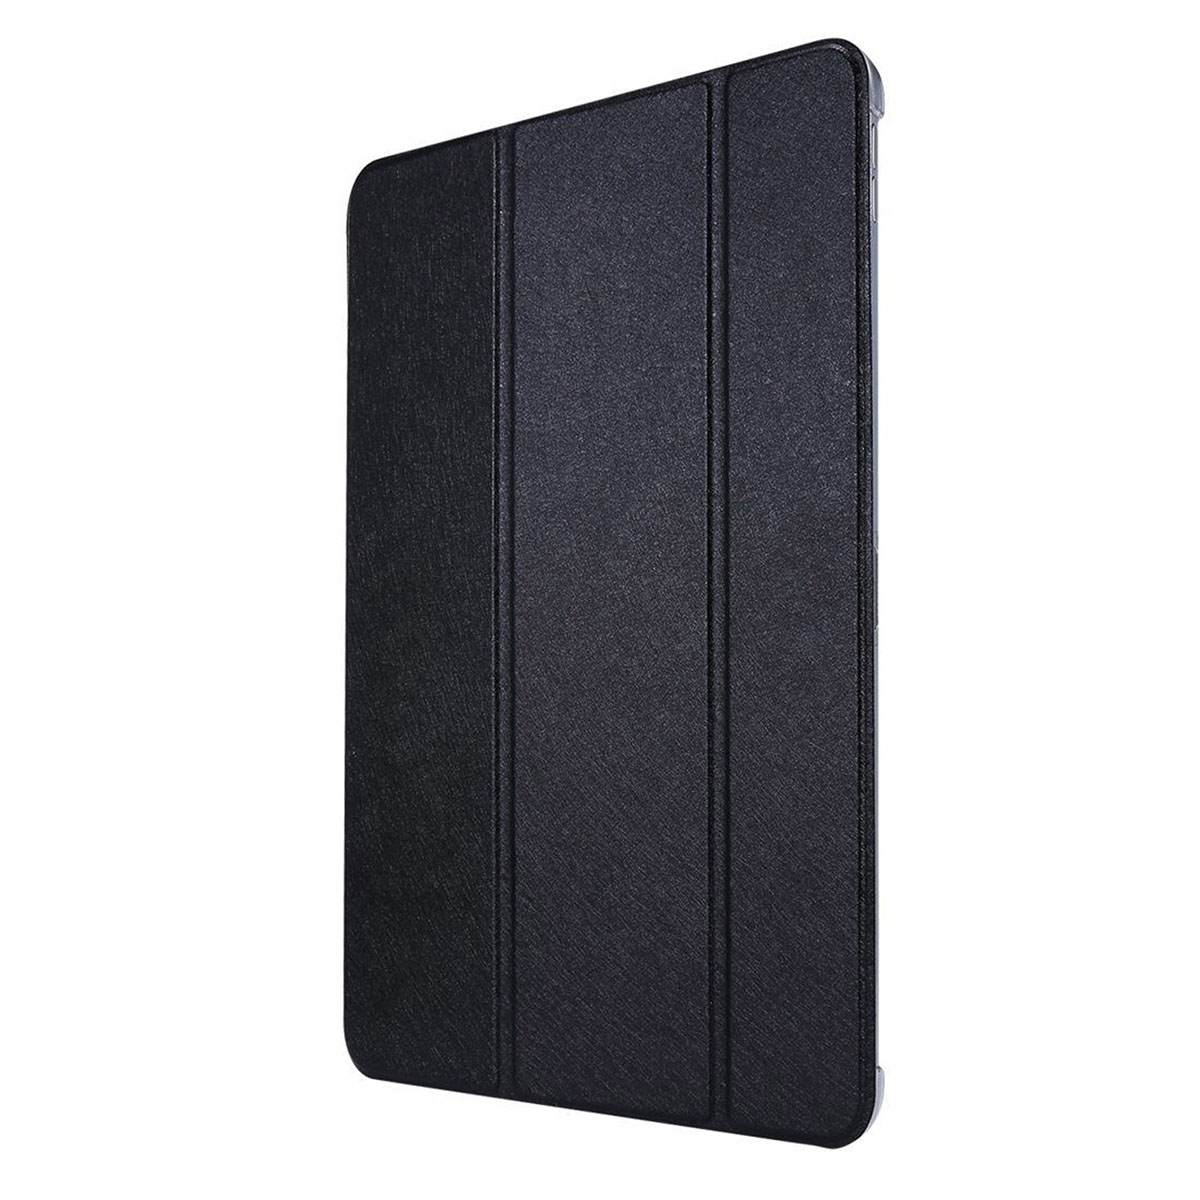 Чехол Smart Case для планшета HUAWEI MatePad 10.4" (BAH3-AL00, BAH3-W09), цвет черный.